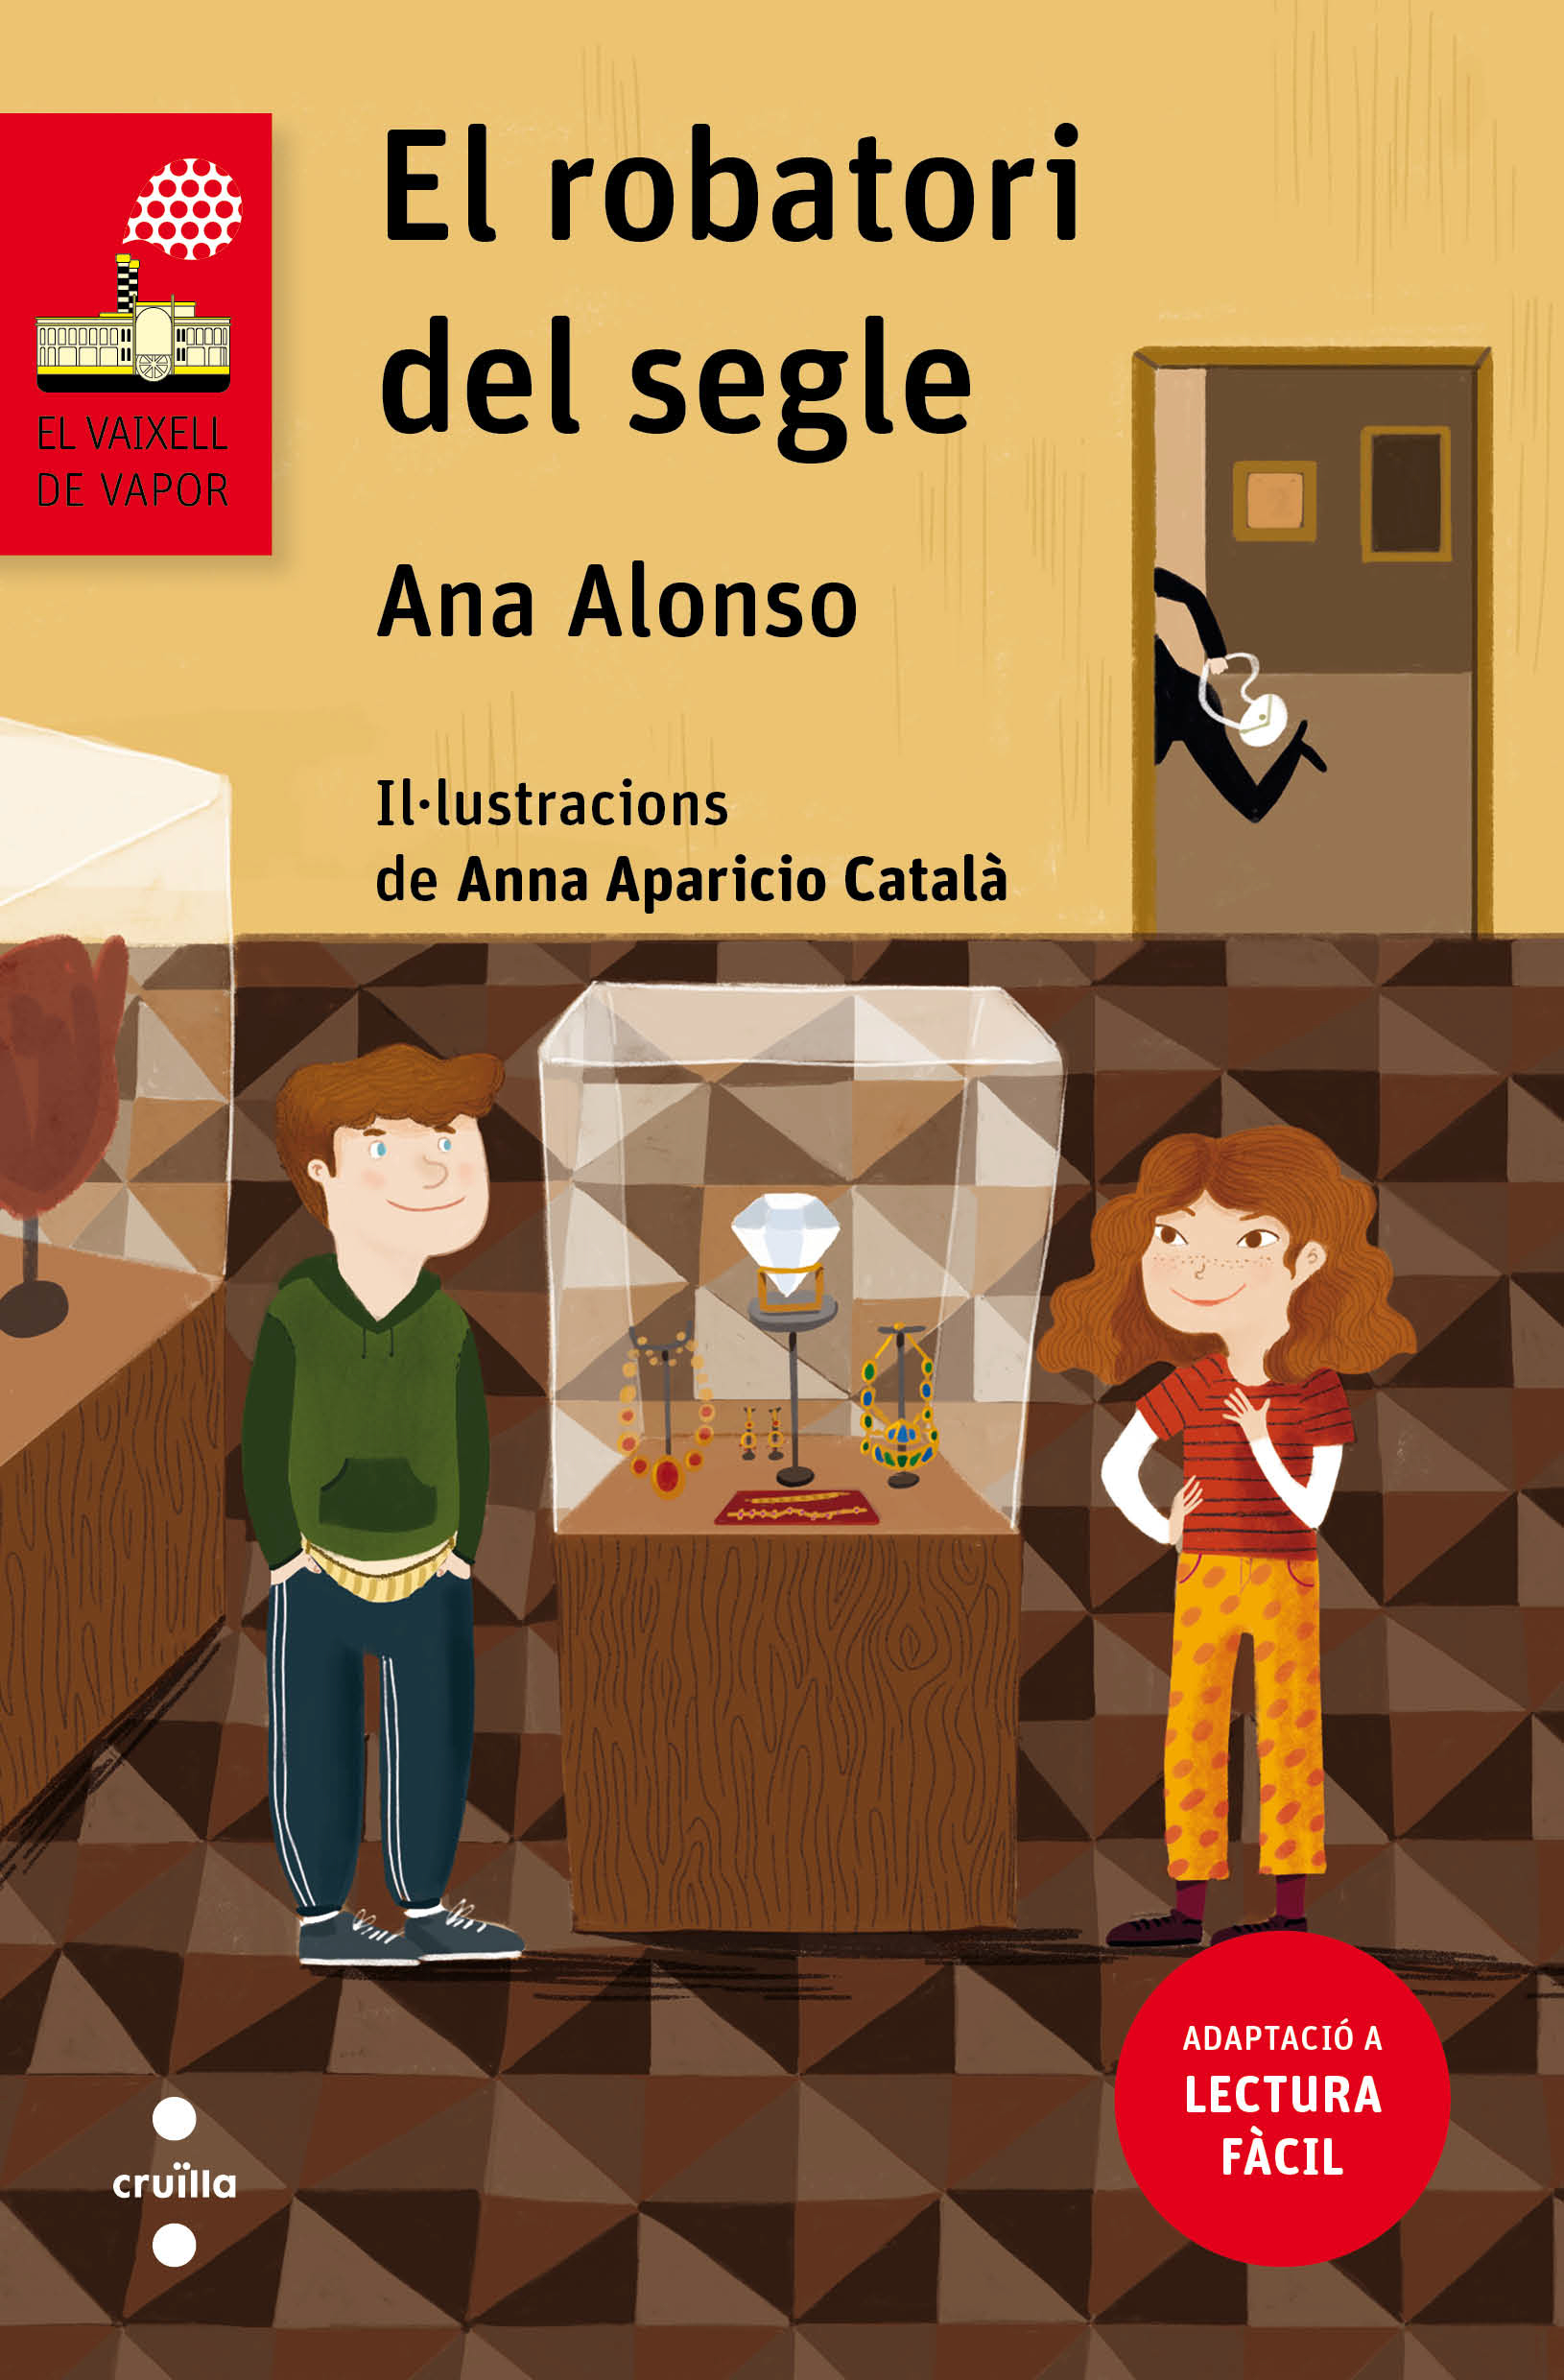 Coberta de "El robatori del segle" (Ana Alonso) en l'edició Lectura fàcil